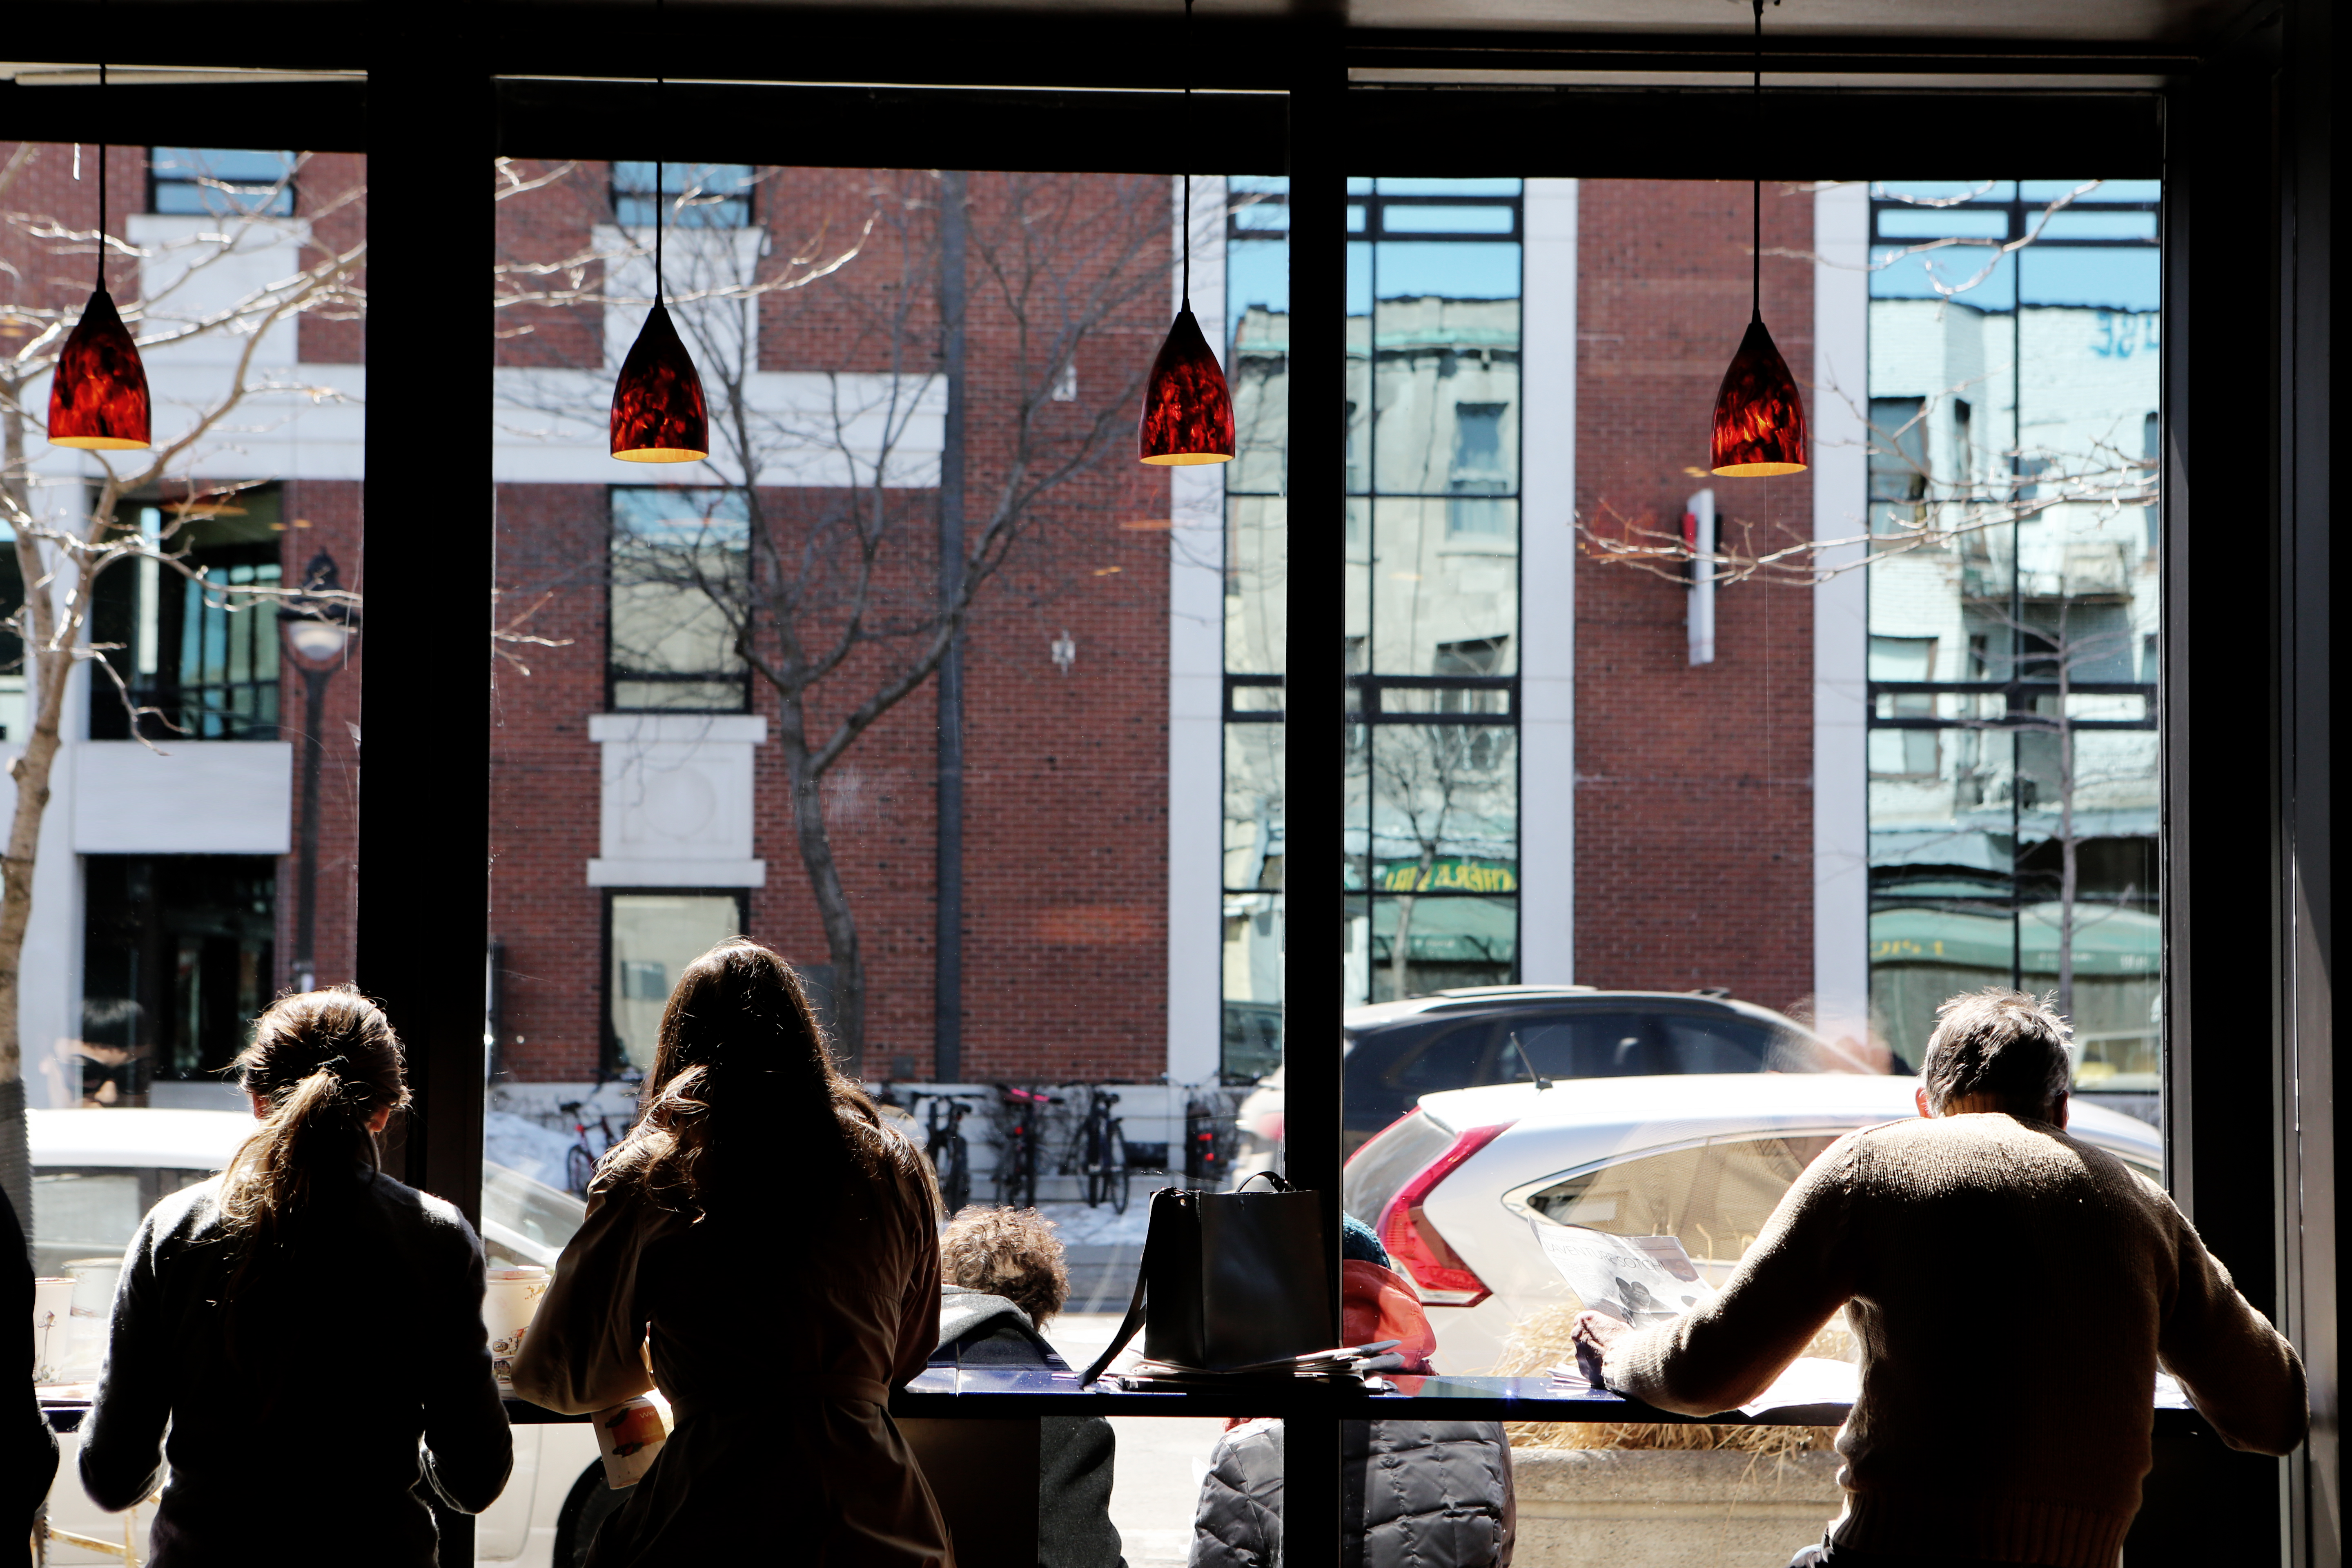 Люди в здании. Ресторан с окном и людьми. Отражение в окне здания. Люди в кафе у окна. Люди за окном в ресторане.